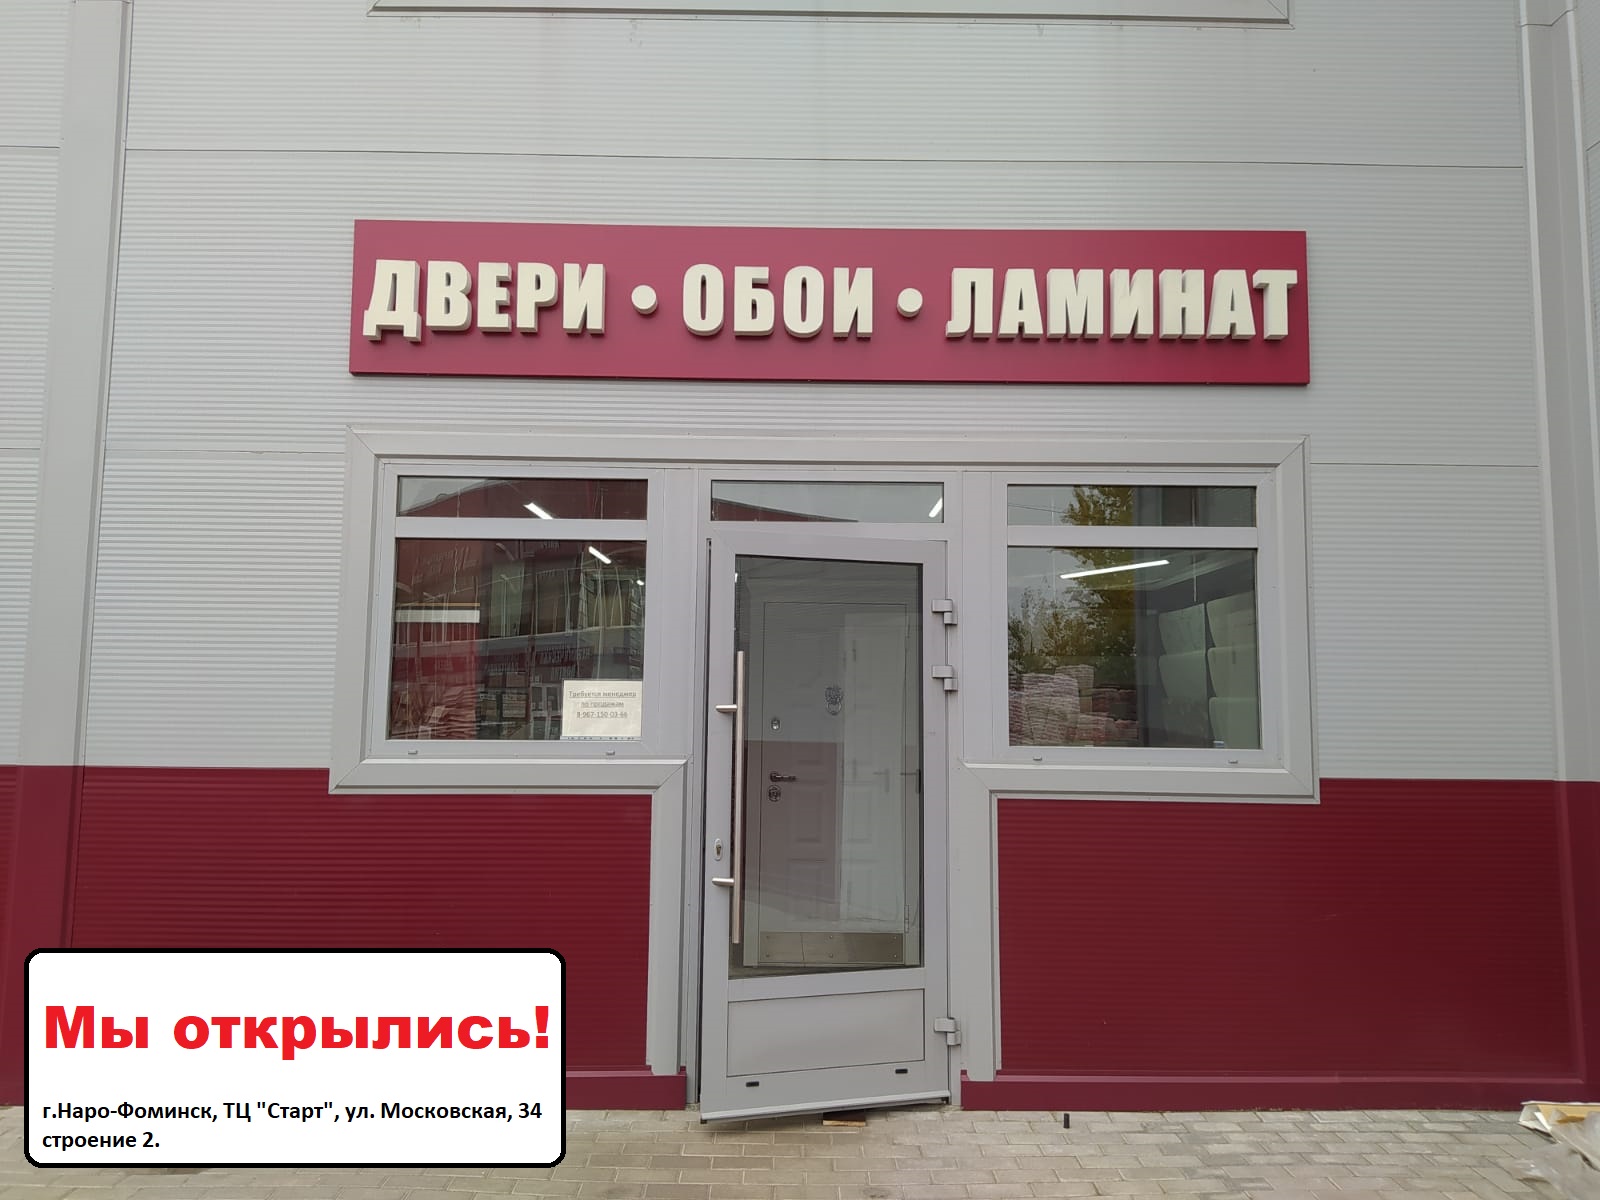 Открылся новый магазин в Наро-Фоминске